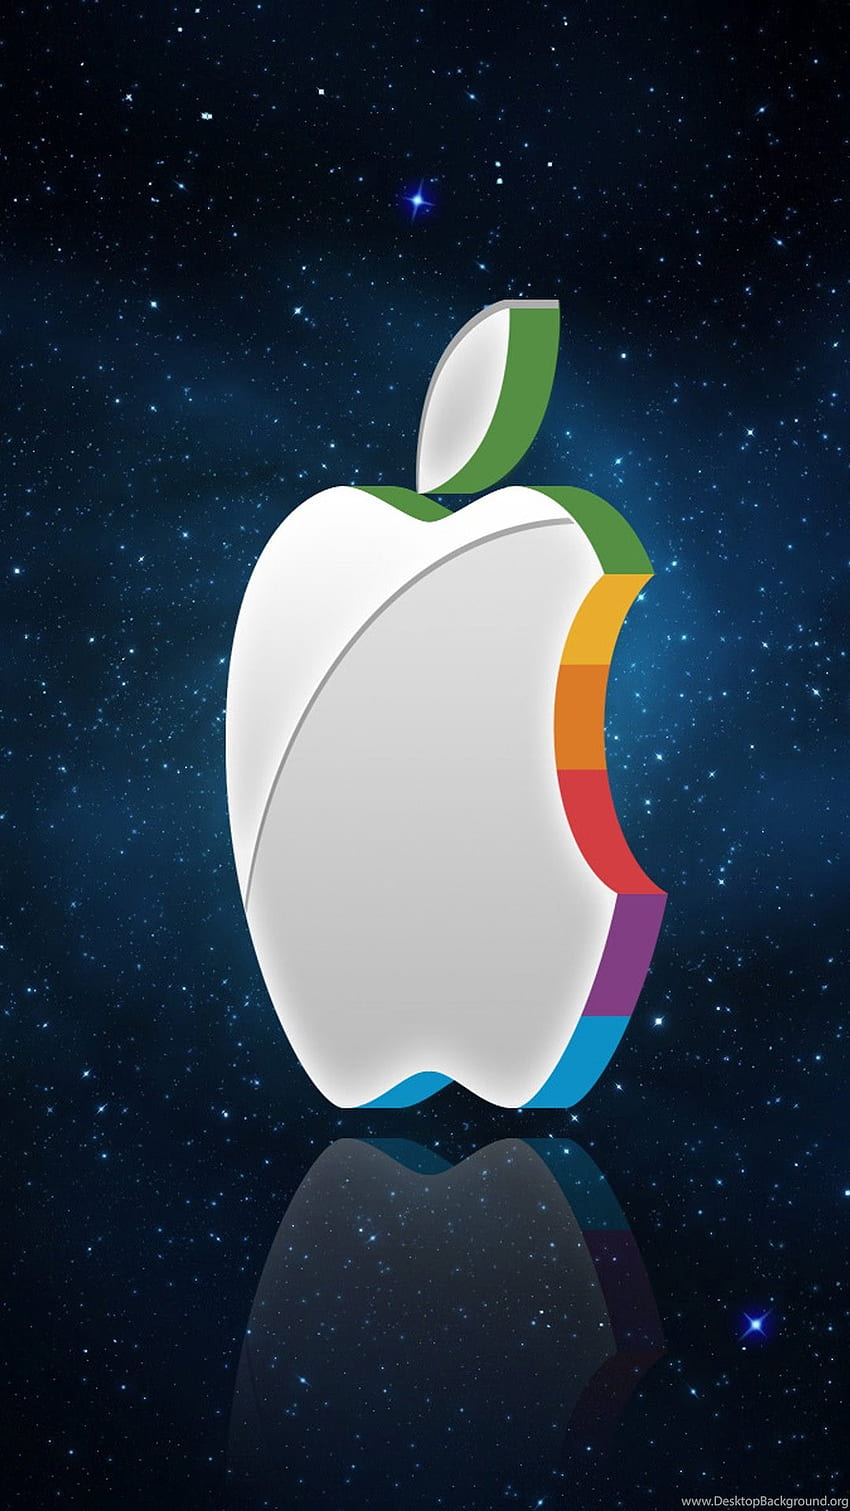 Apple Logo Design by deginer_shuvo on Dribbble